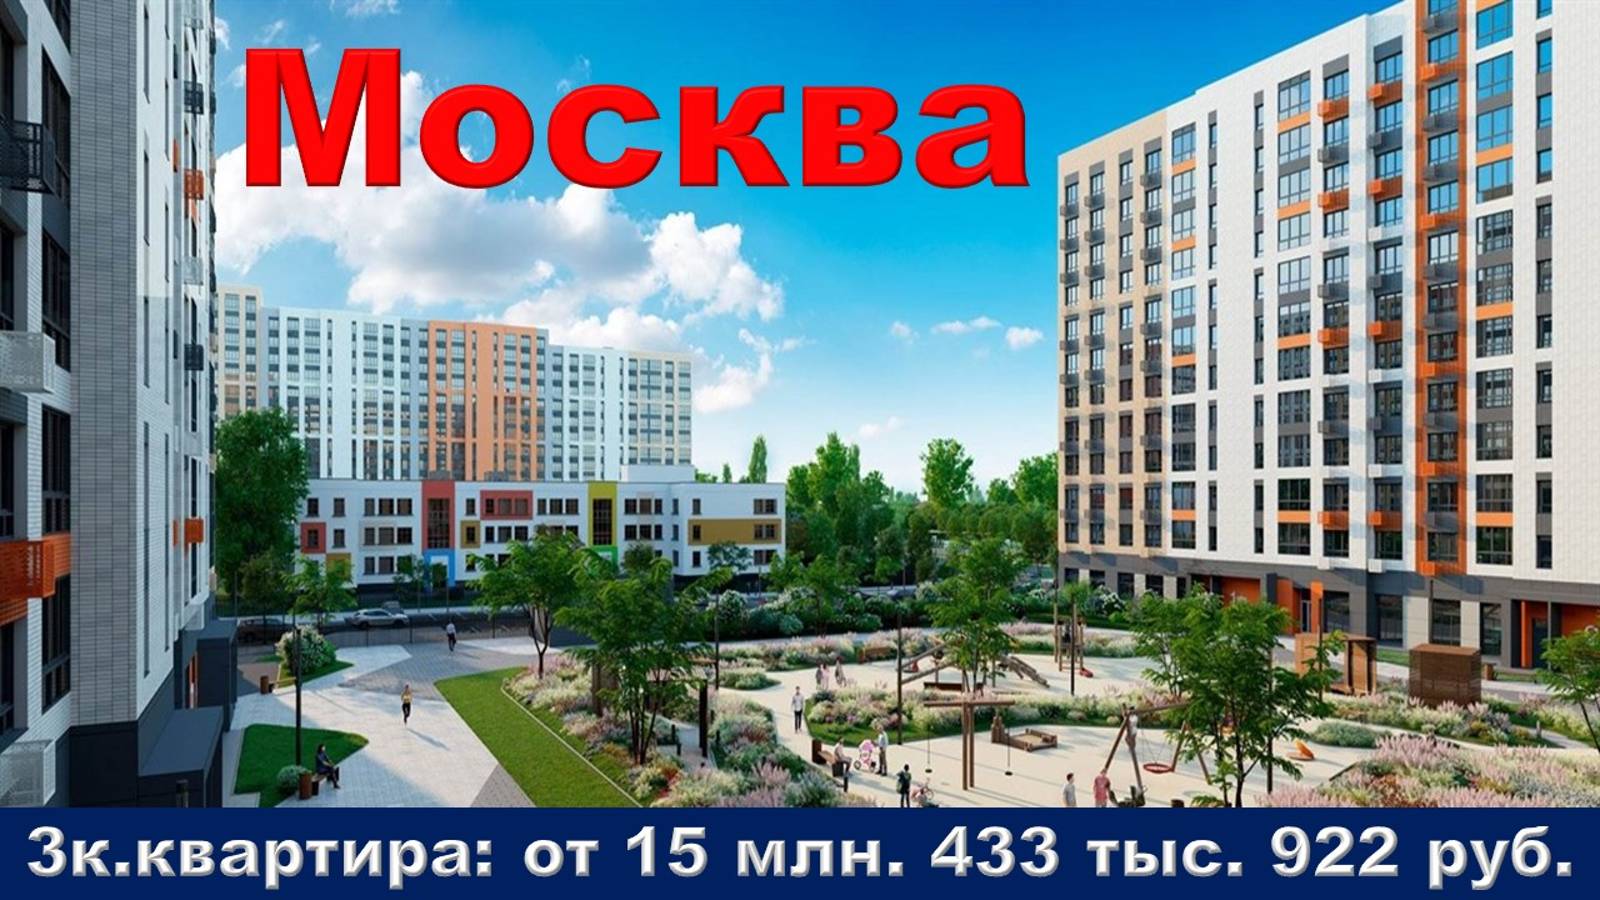 Москва. 3к. квартира от 15 млн. 433 тыс. 922 руб.